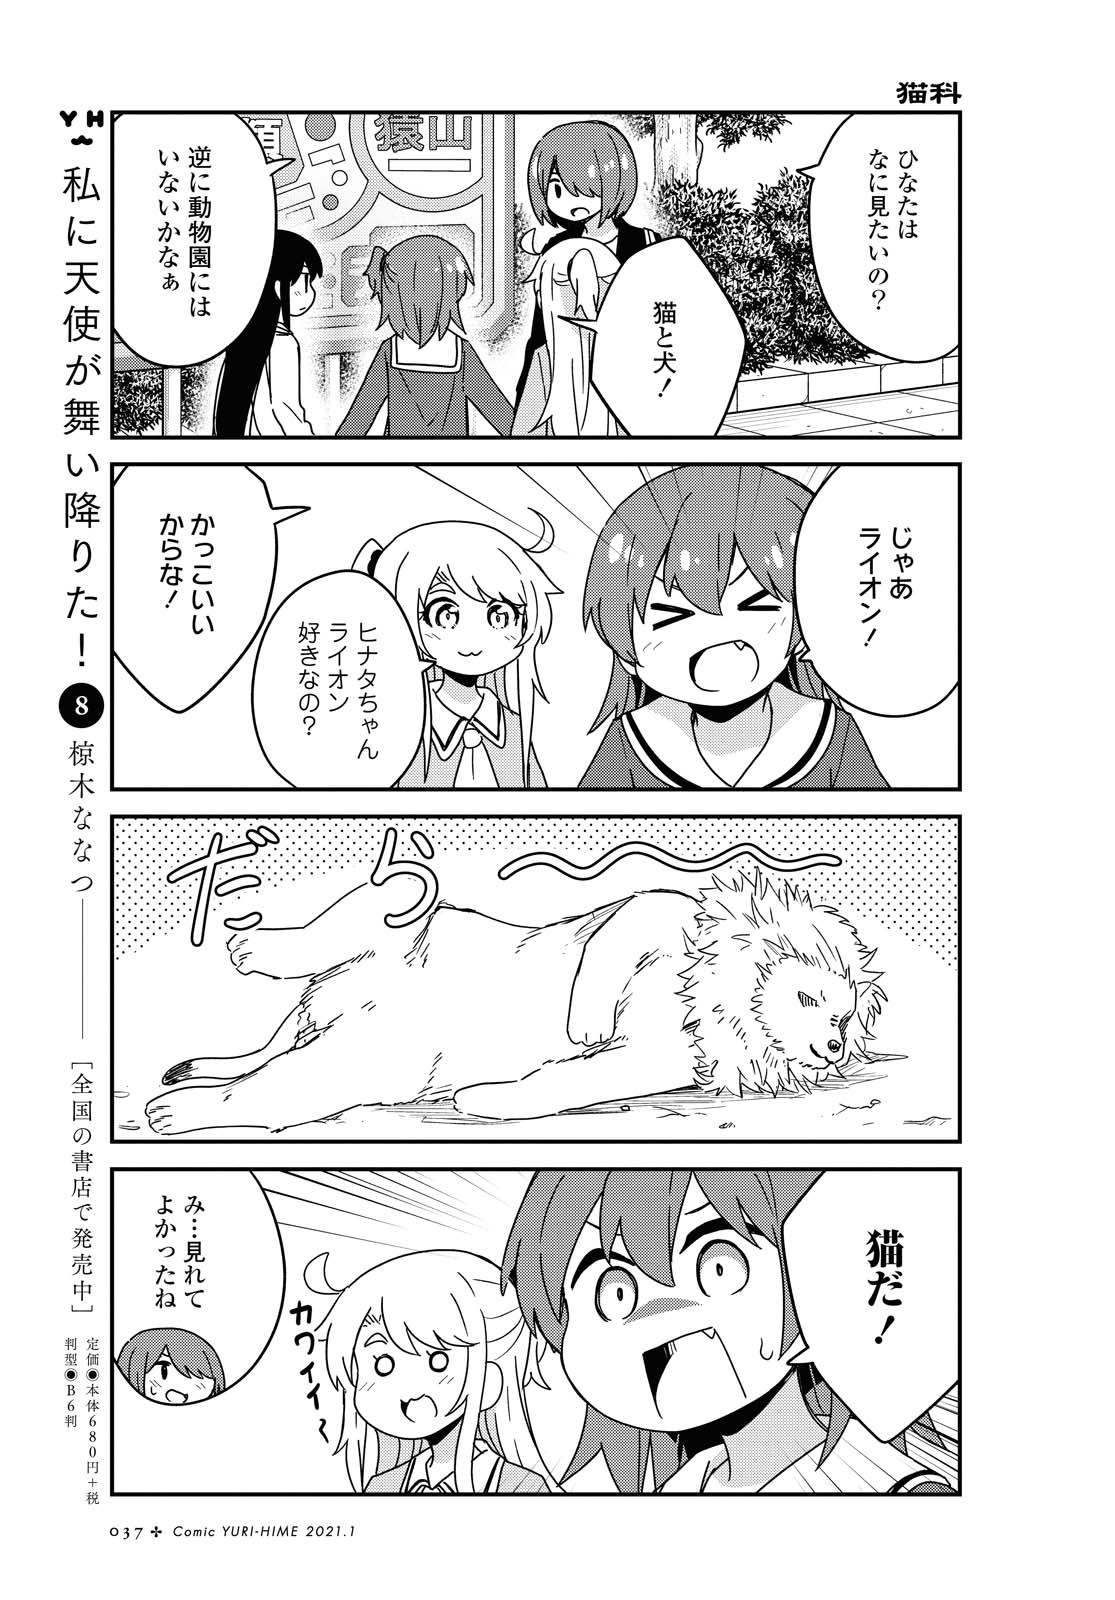 Watashi ni Tenshi ga Maiorita! - Chapter 74 - Page 5